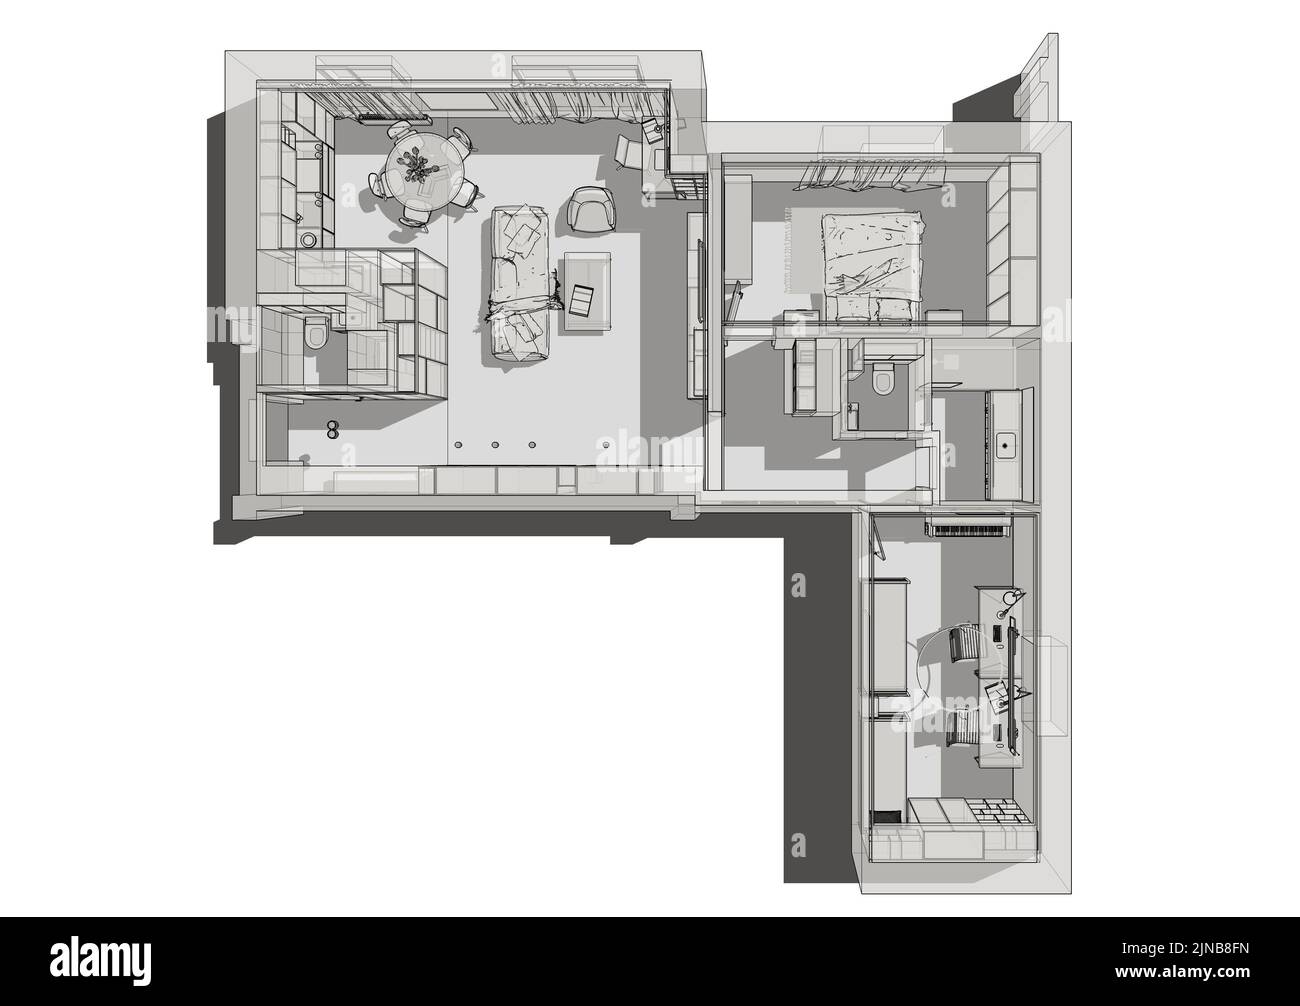 Abbildung des Innenraums. Planen. Illustration der Wohnung im Blaupause-Stil. Stockfoto